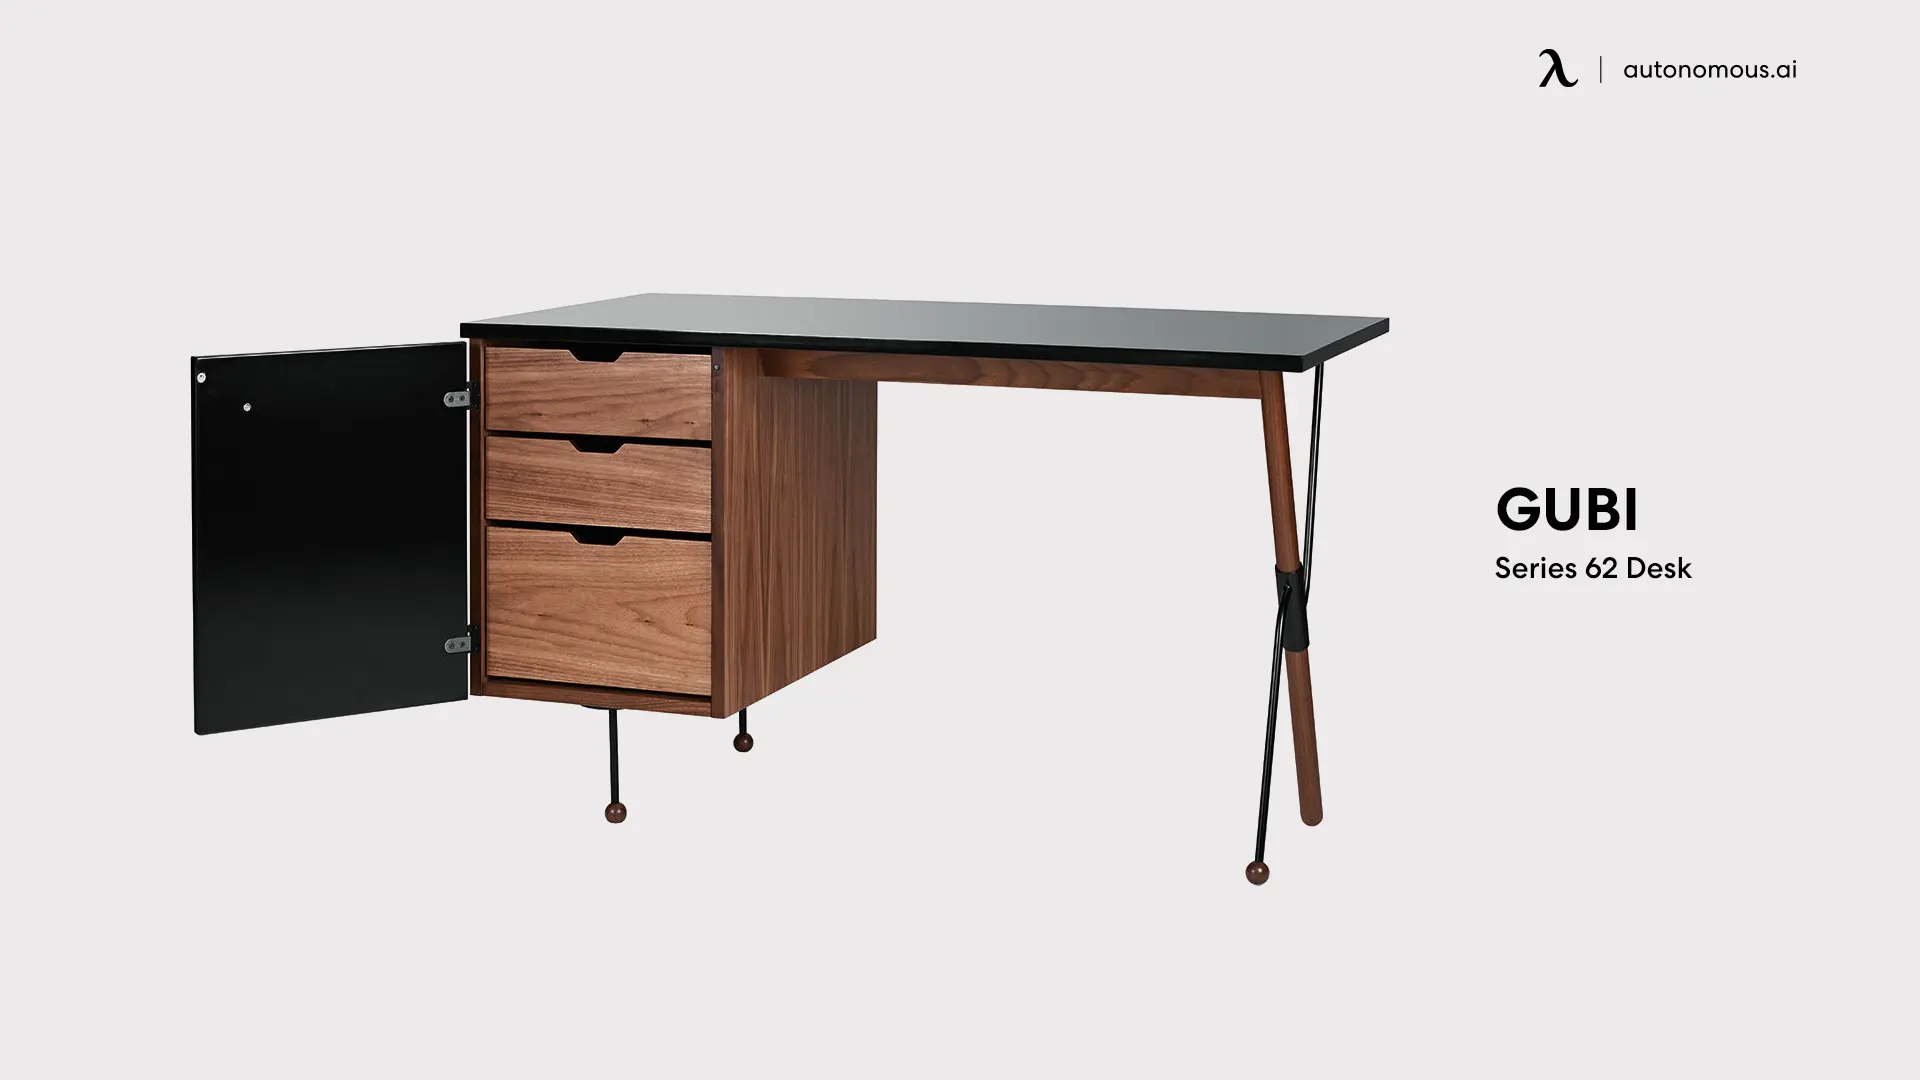 Series 62 Desk by Gubi - cool desk